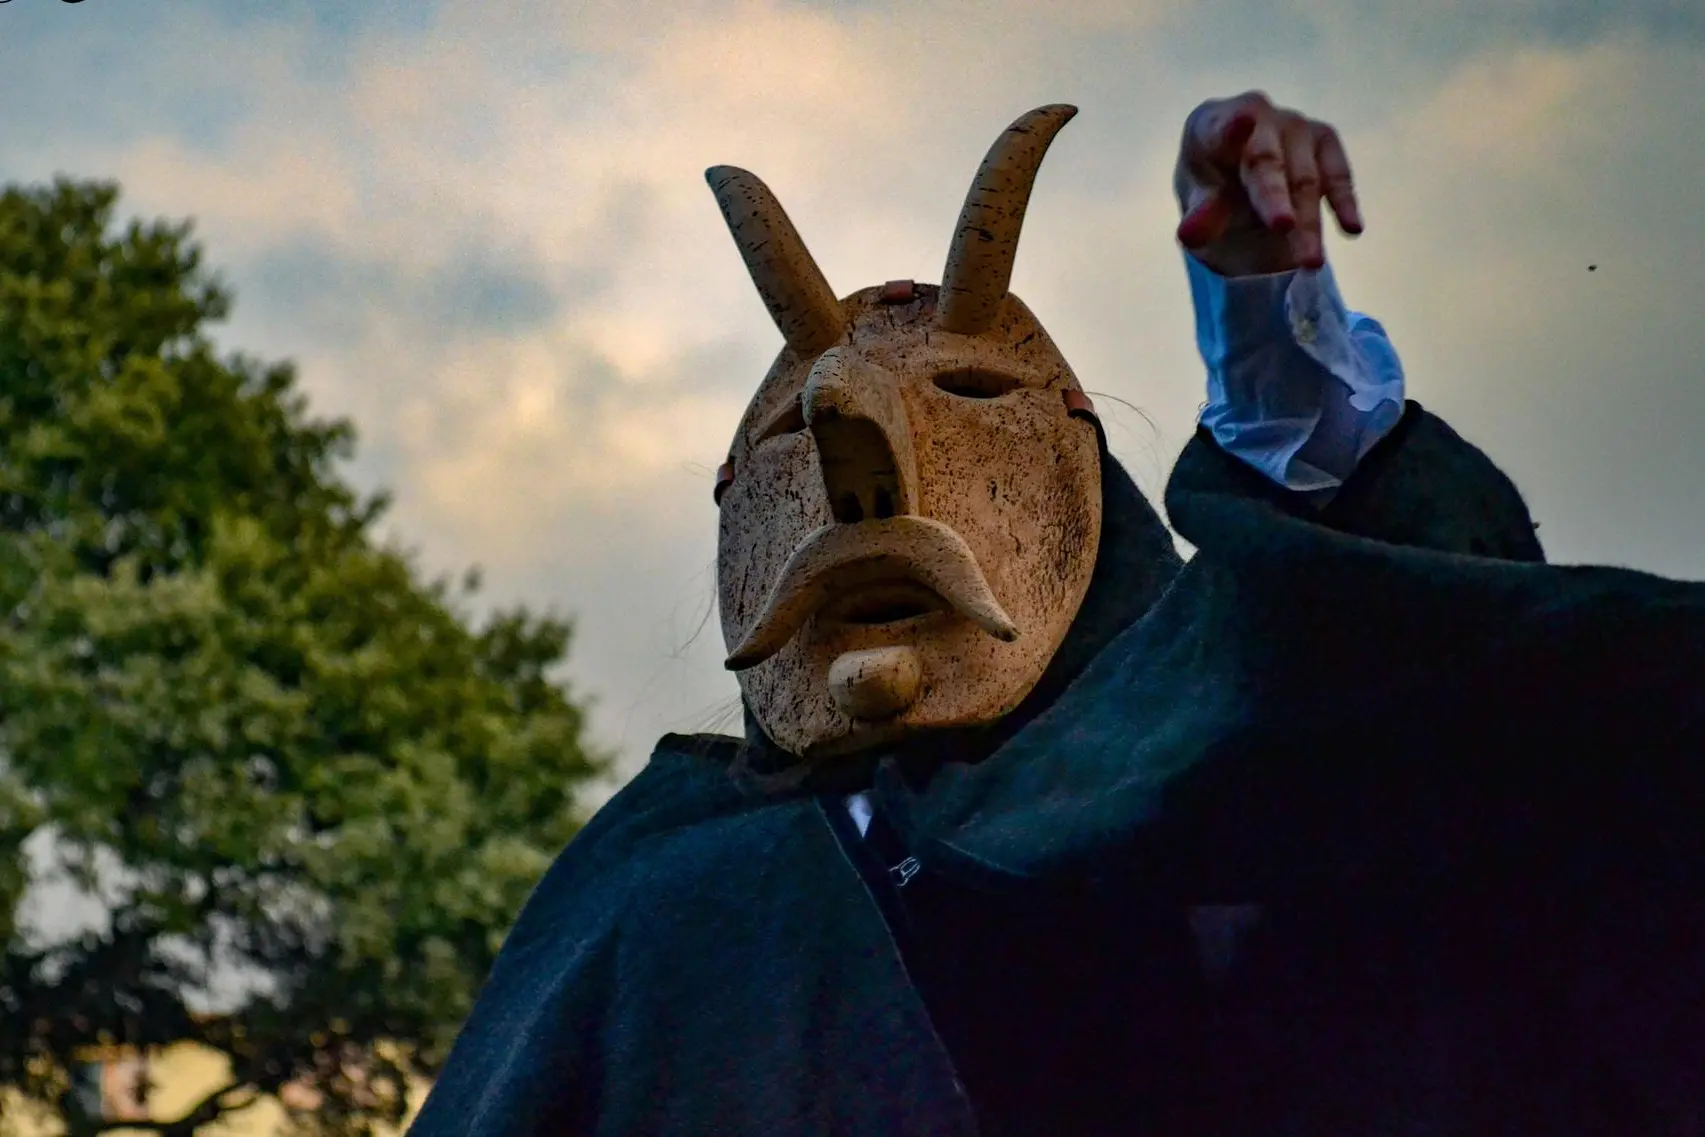 Le maschere della tradizione (foto Orbana)